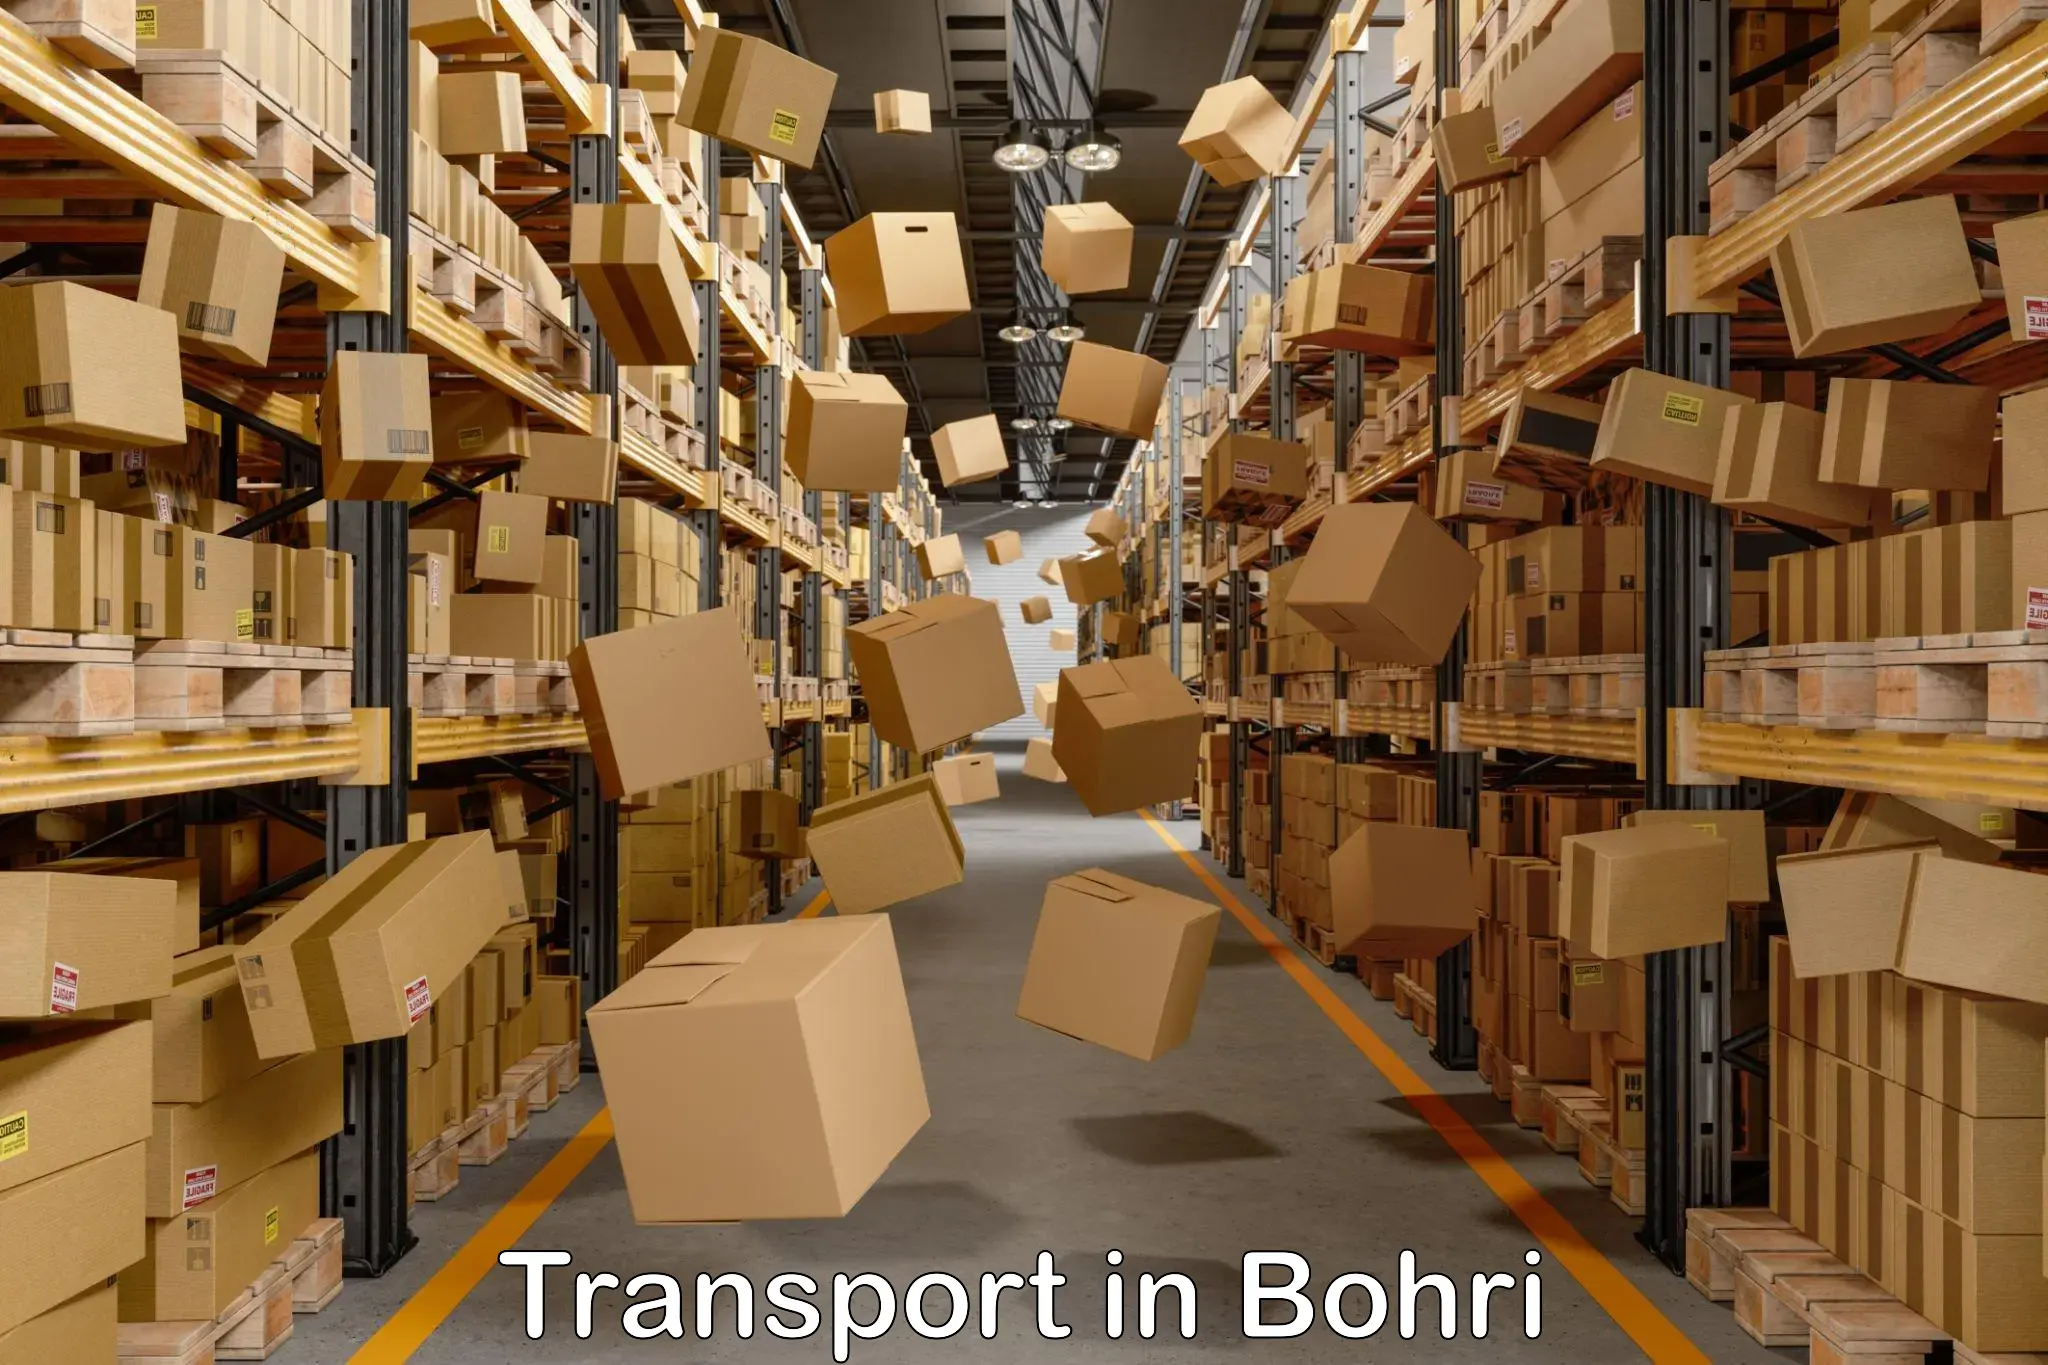 Domestic transport services in Bohri